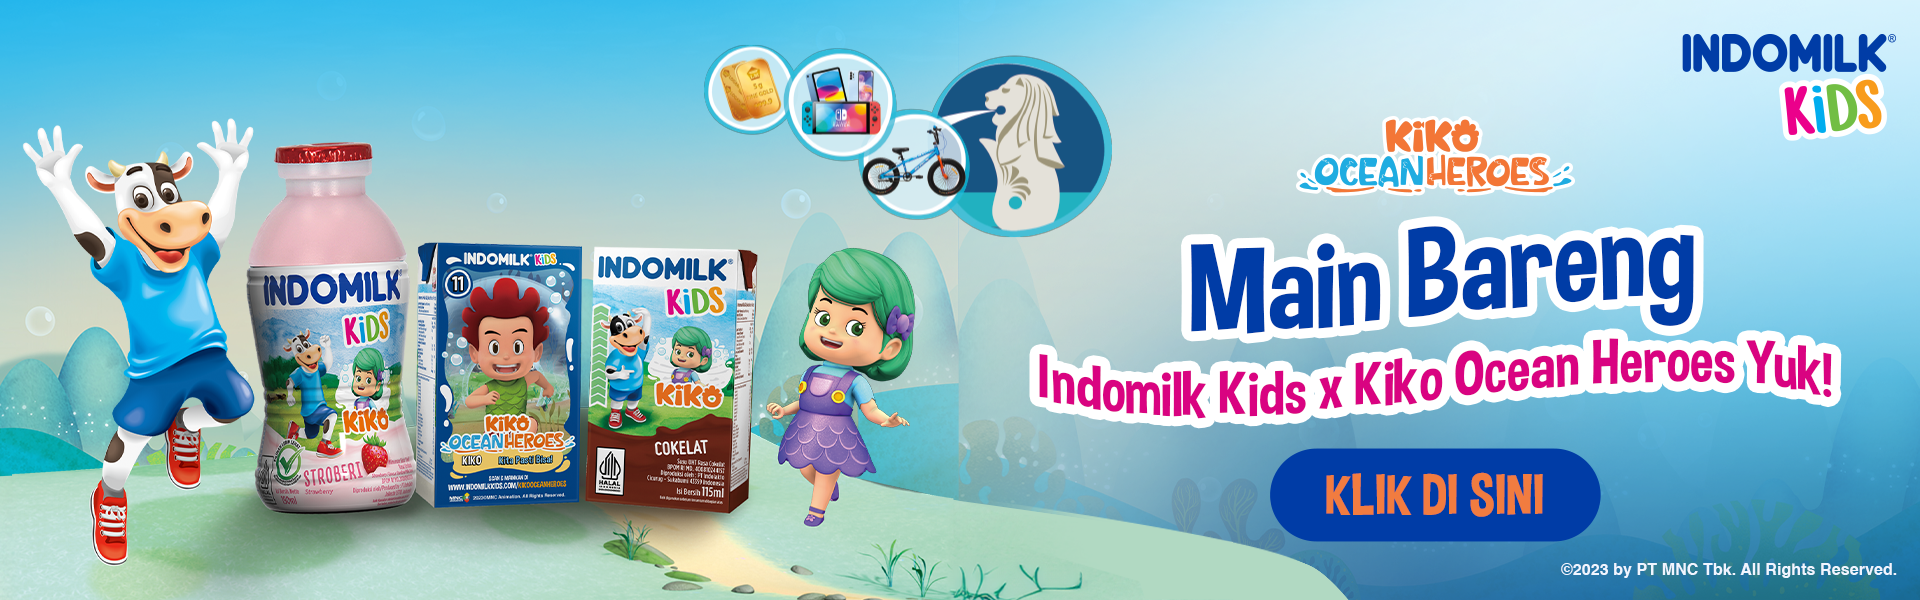 Indomilk Kids - Kiko Ocean Heroes